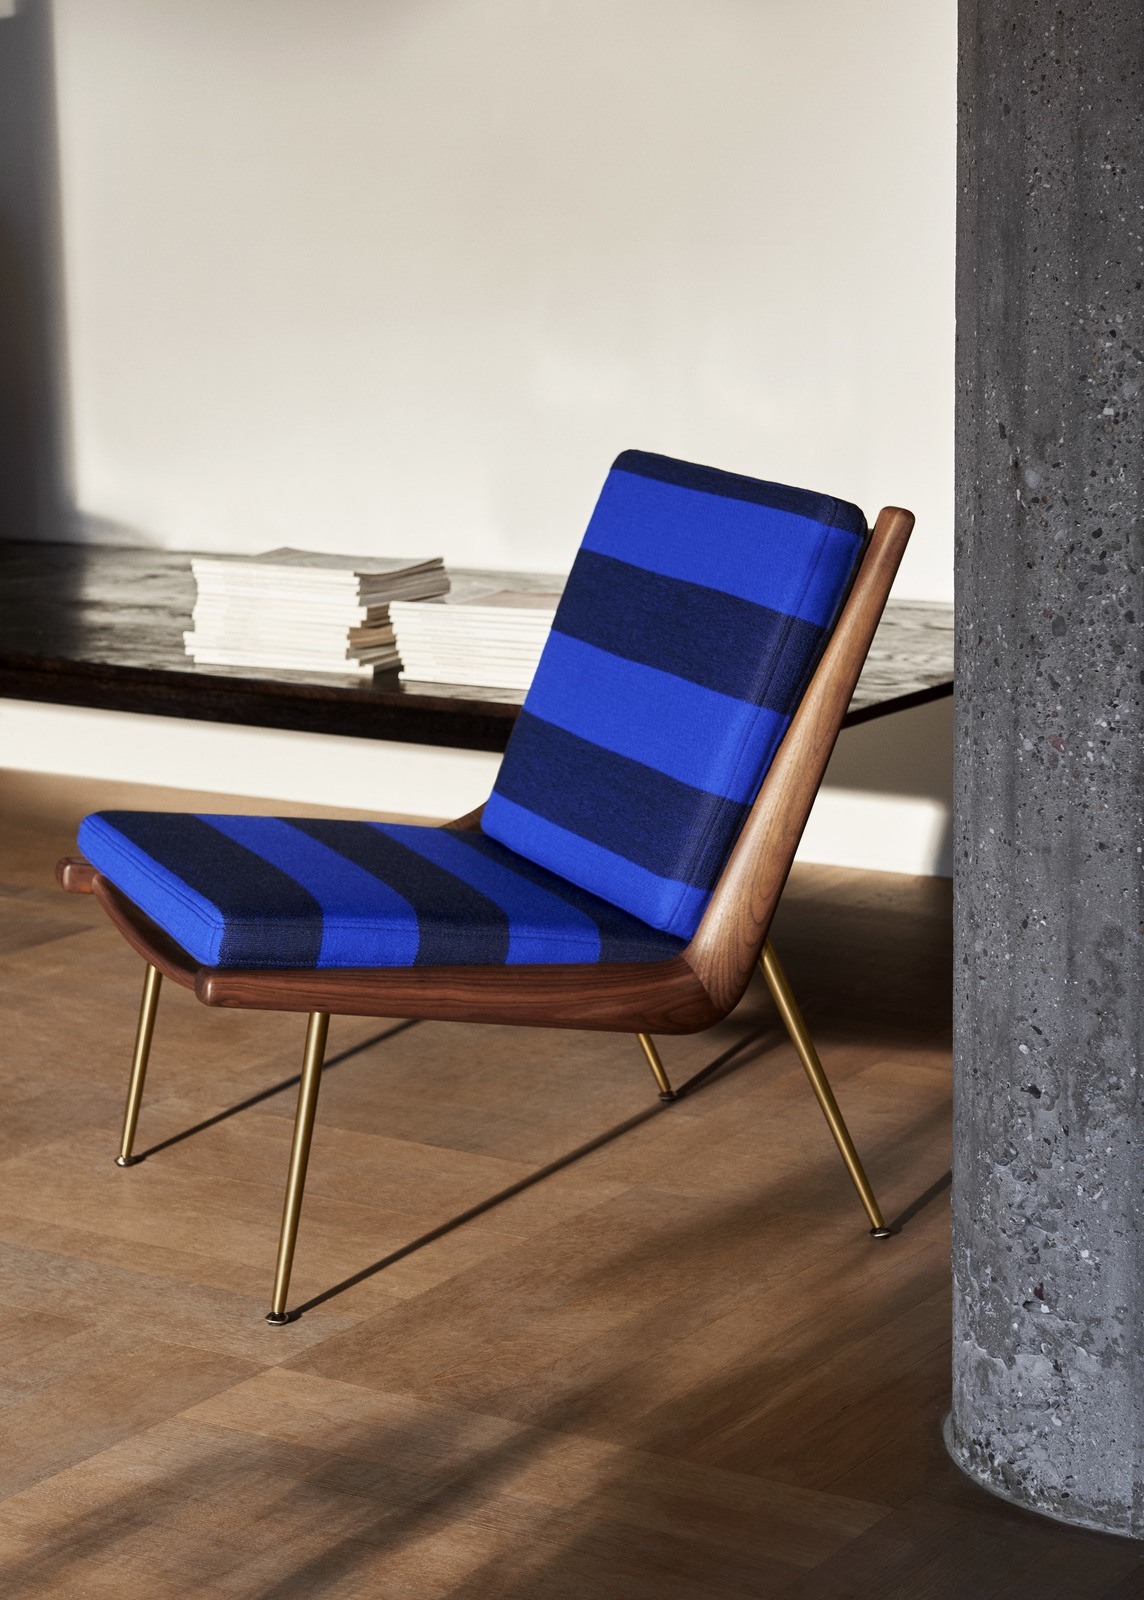 Musterschüler: Aus Liebe zum Streifen. Boomerang Sessel mit horizontalen blauen Blockstreifen